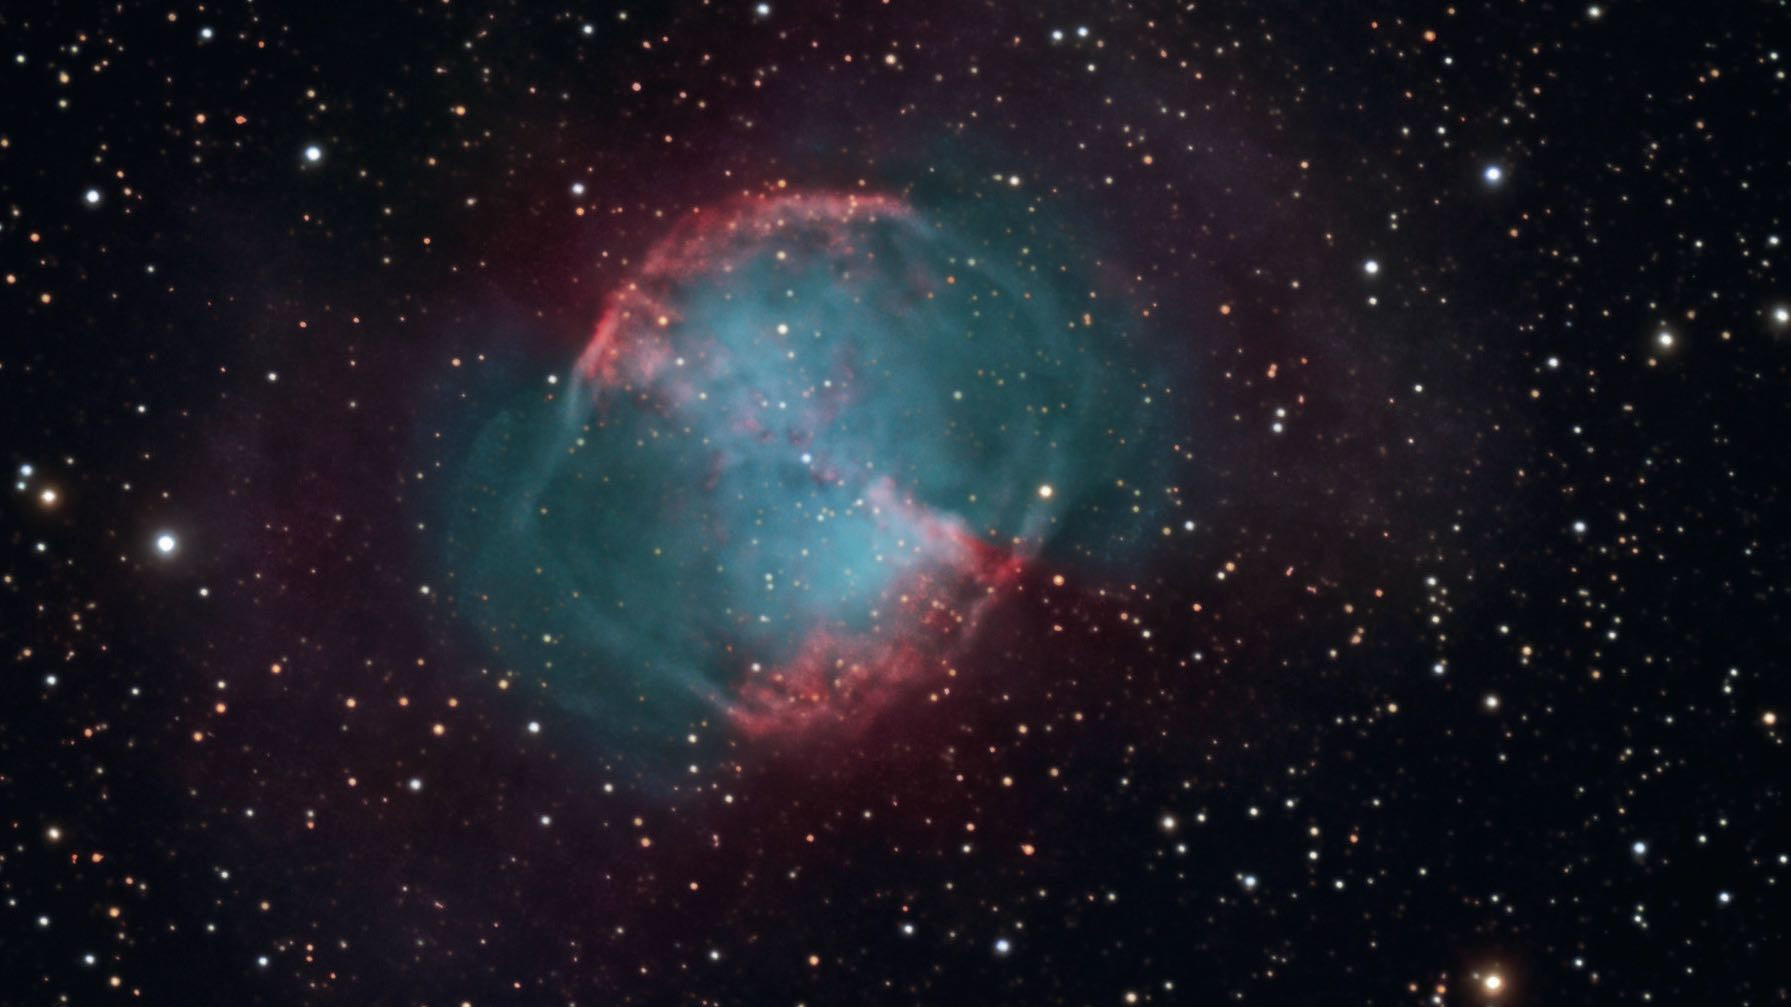 Den planetariska nebulosan M 27 kan också vara ett givande objekt för stadsobservatörer. De som använder ett filter kan till och med uppleva hantel-effekten. Sebastian Voltmer / CCD-guide